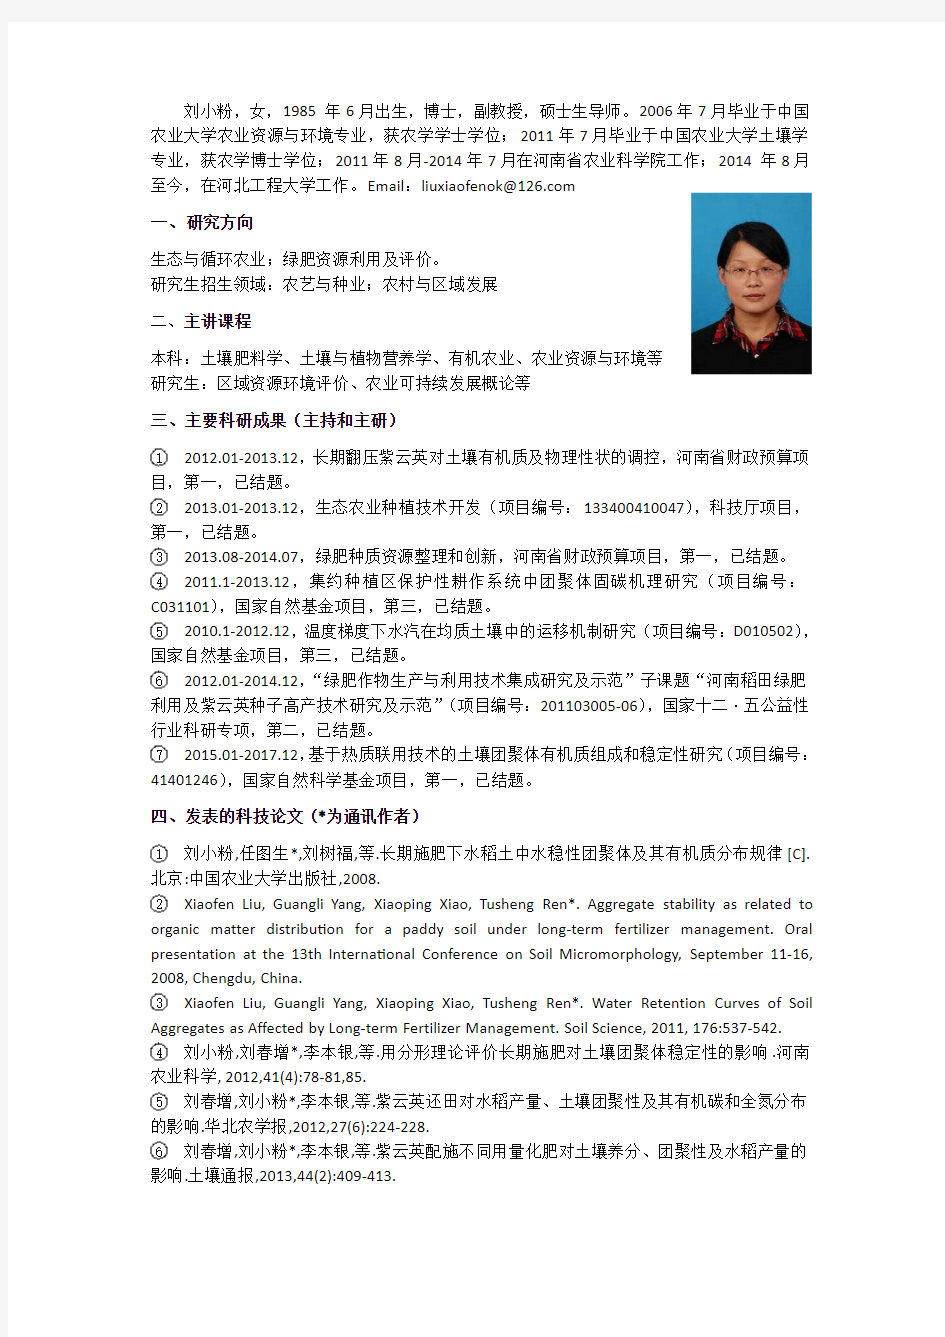 刘小粉,女,1985年6月出生,博士,副教授,硕士生导师